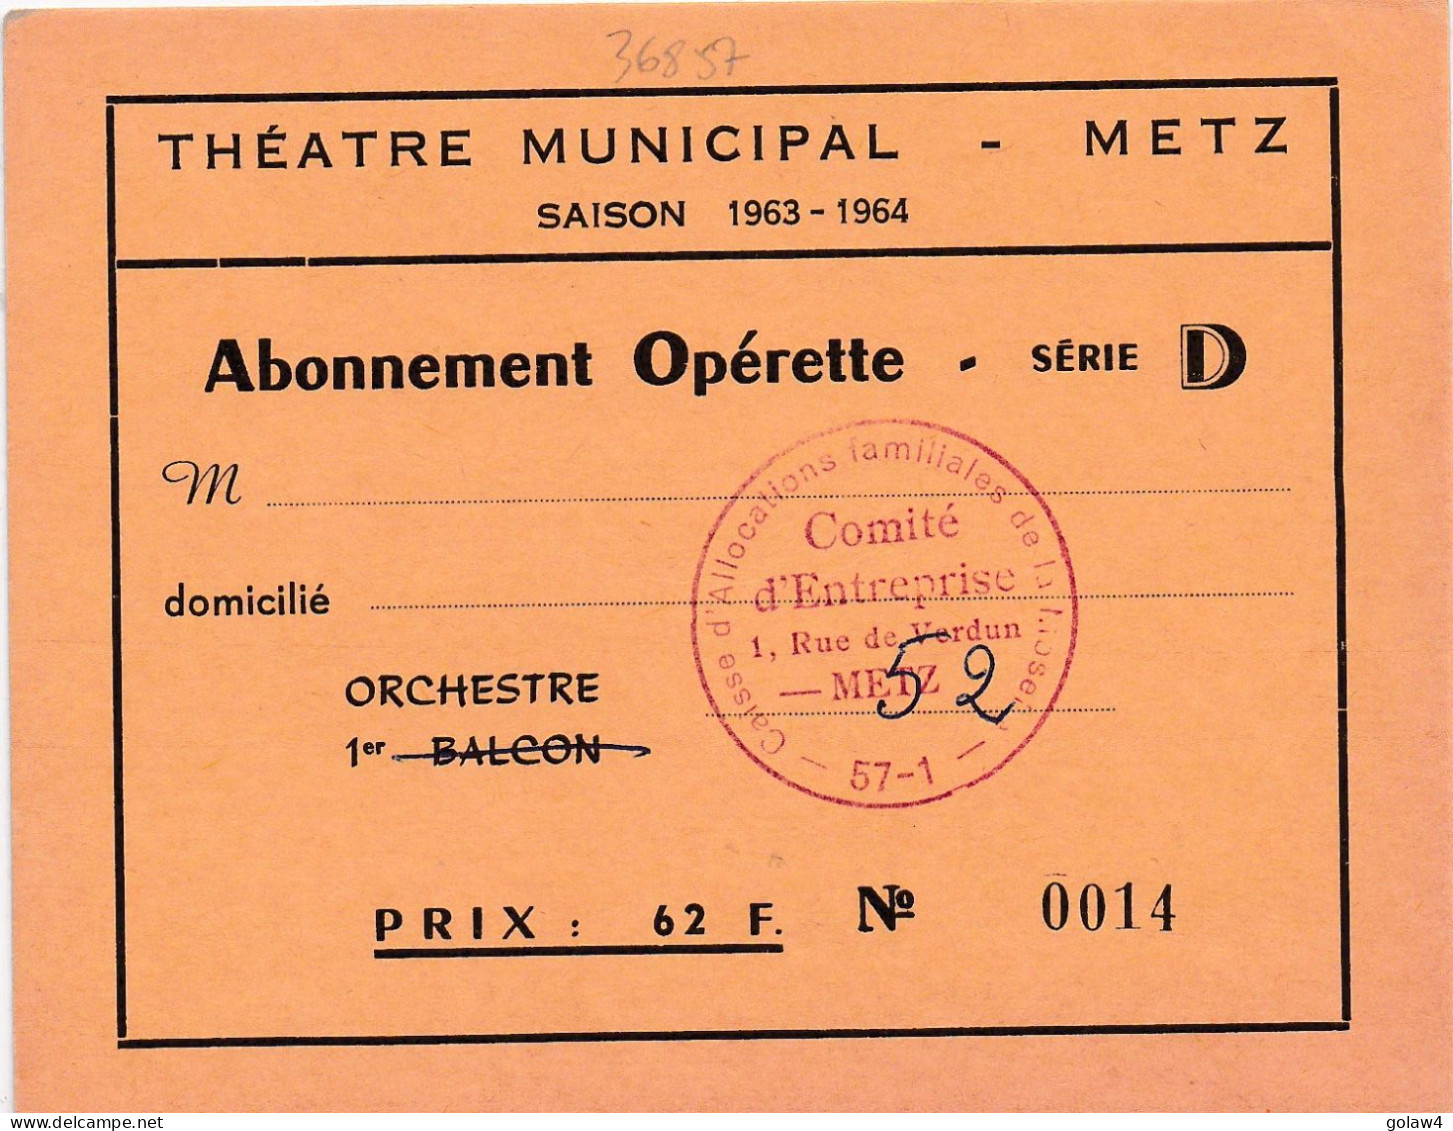 36857 THEATRE MUNICIPAL METZ SAISON 1963 1964 ABONNEMENT OPERETTE SERIE ORCHESTRE CAISSE ALLOCATIONS FAMILIALLES MOSELLE - Tickets - Vouchers